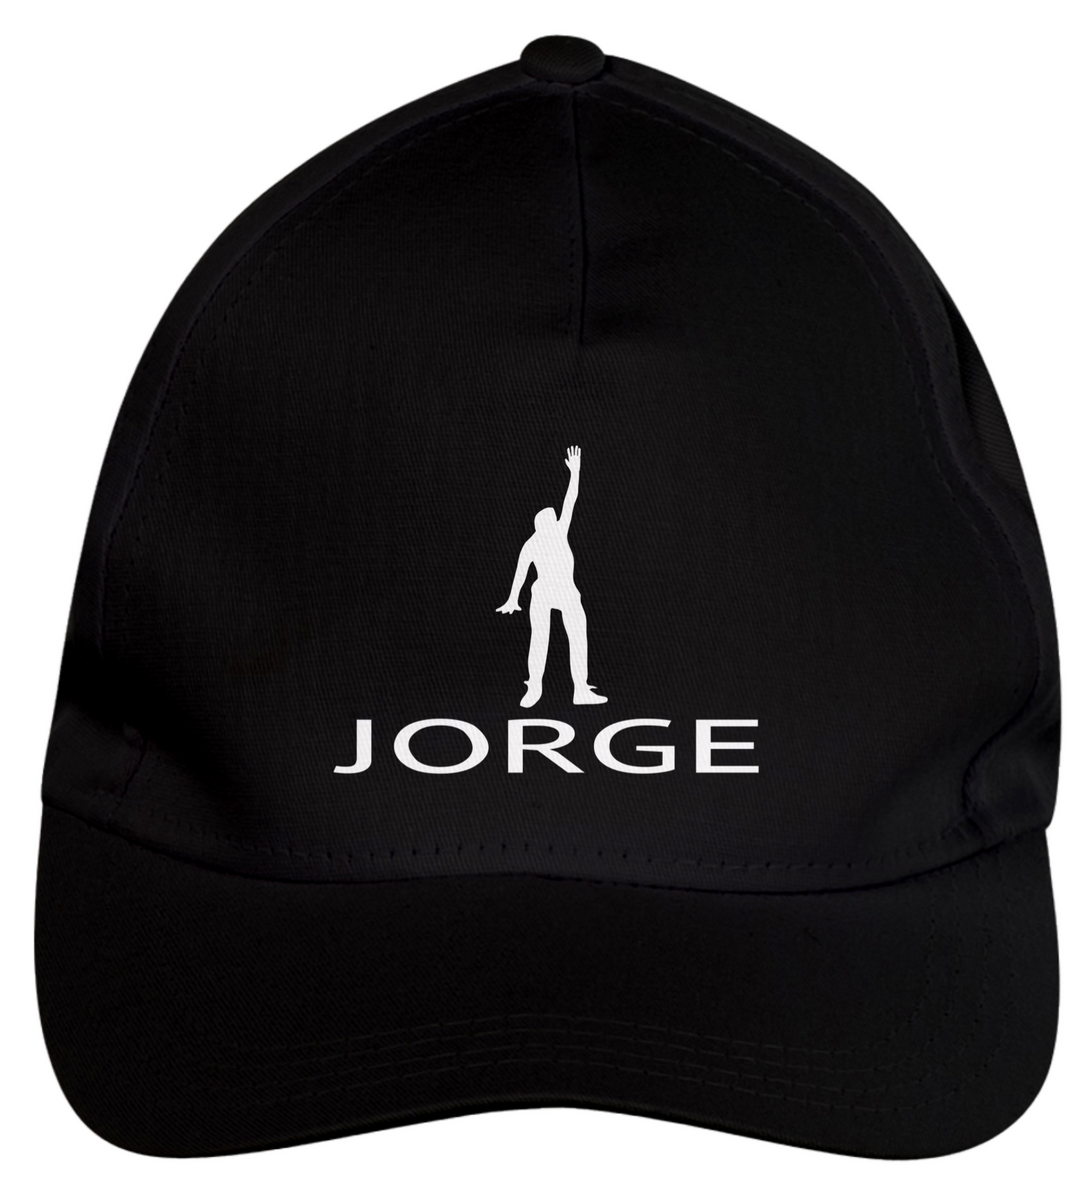 Nome do produto: JORGE - Jordan